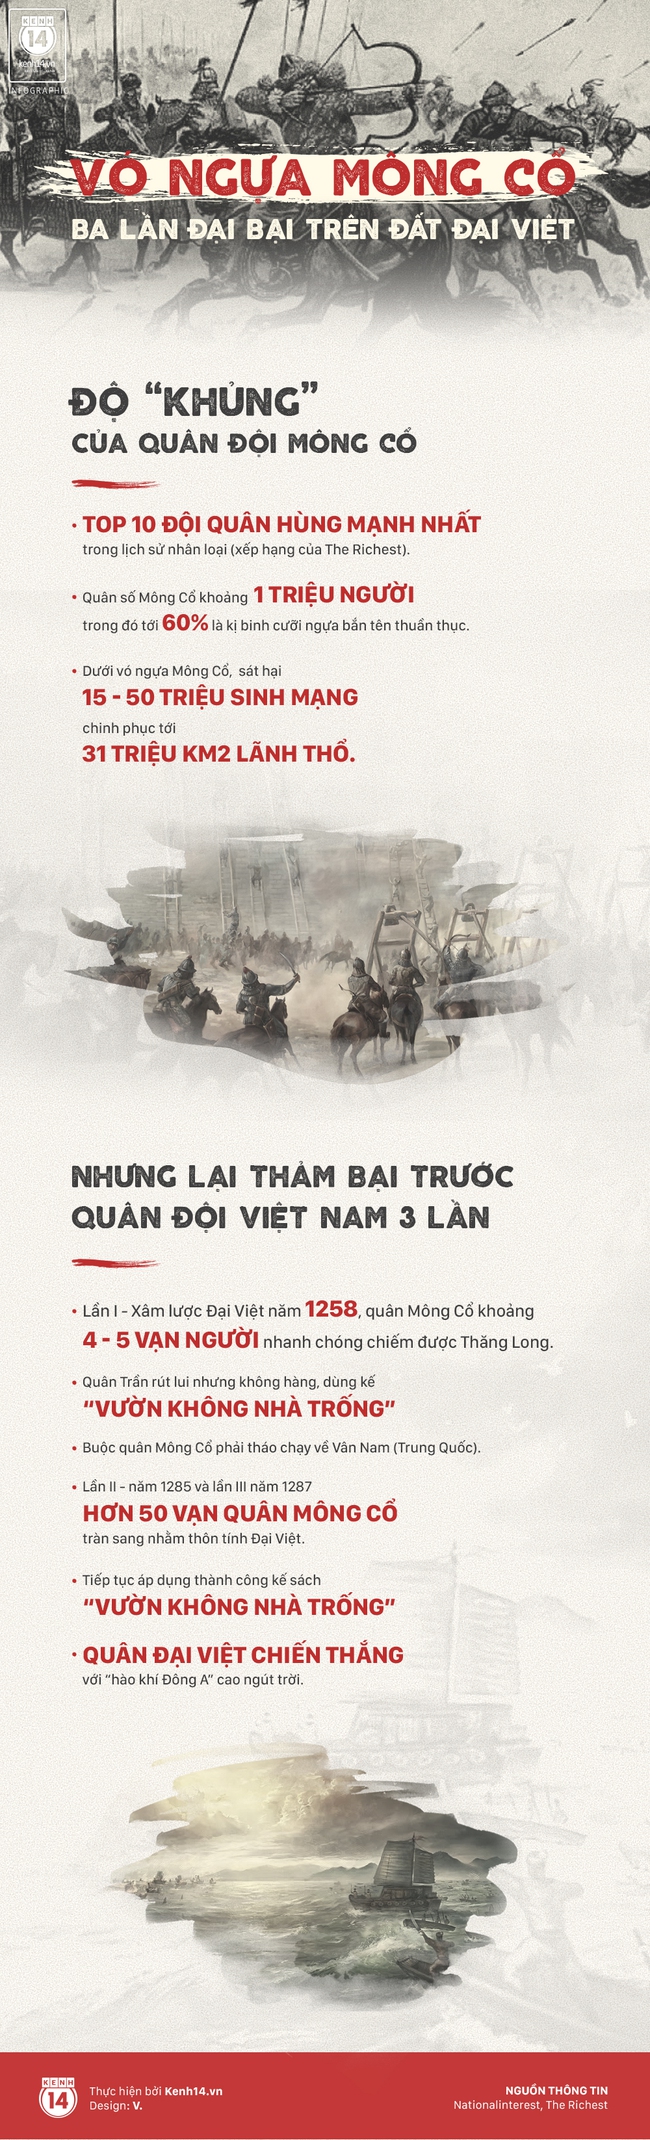 3 chiến thắng khiến chúng ta luôn tự hào về sức mạnh của quân đội Việt Nam - Ảnh 1.